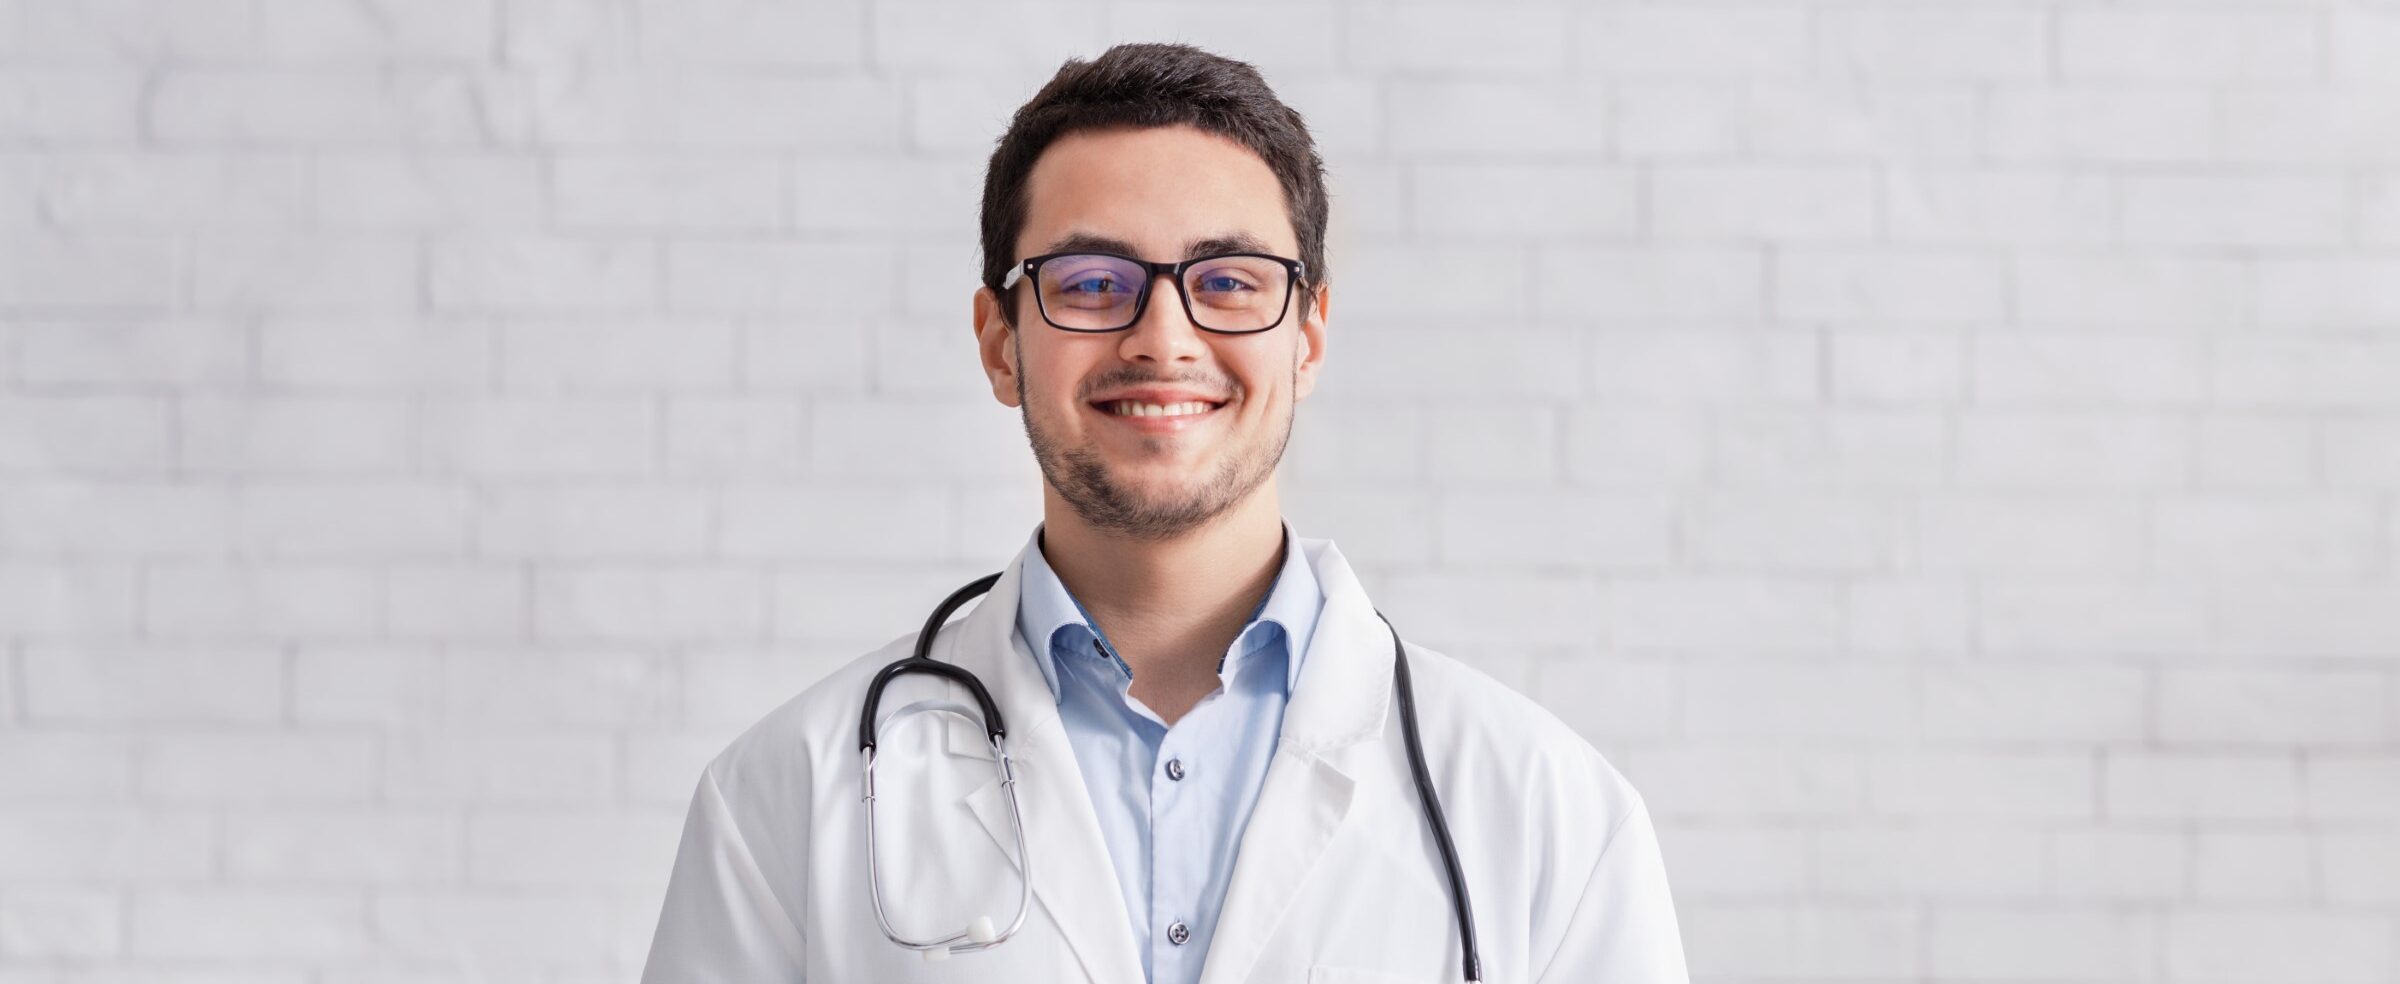 remote-work-young-doctor-in-white-coat-on-brick-w-2021-08-28-09-00-30-utc-Custom-e1645380513667.jpg